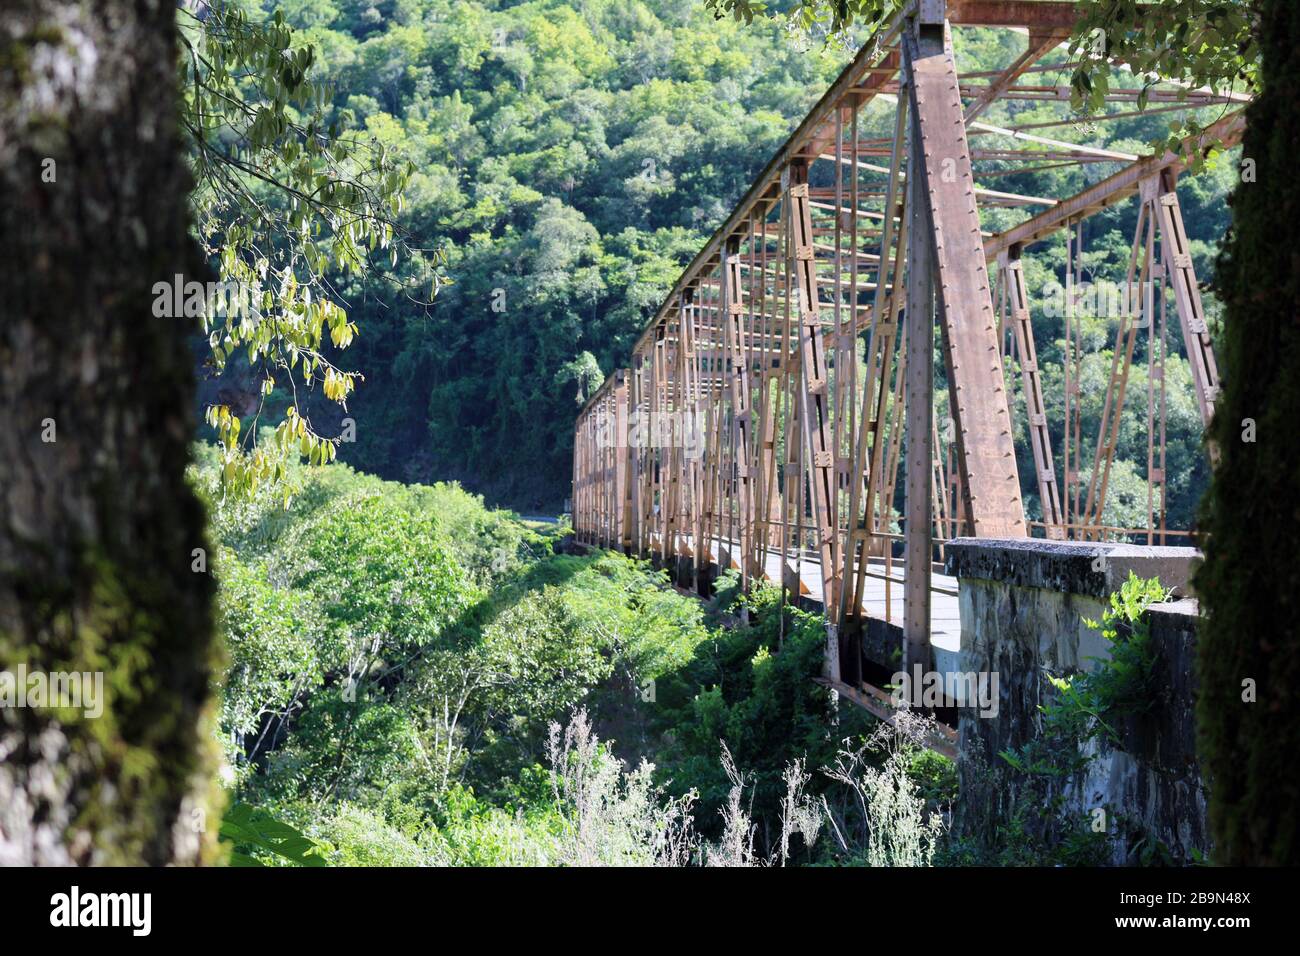 Vista central o lateral de un viejo puente de hierro. Sólida estructura que une dos municipios de Rio Grande do Sul. Foto de stock